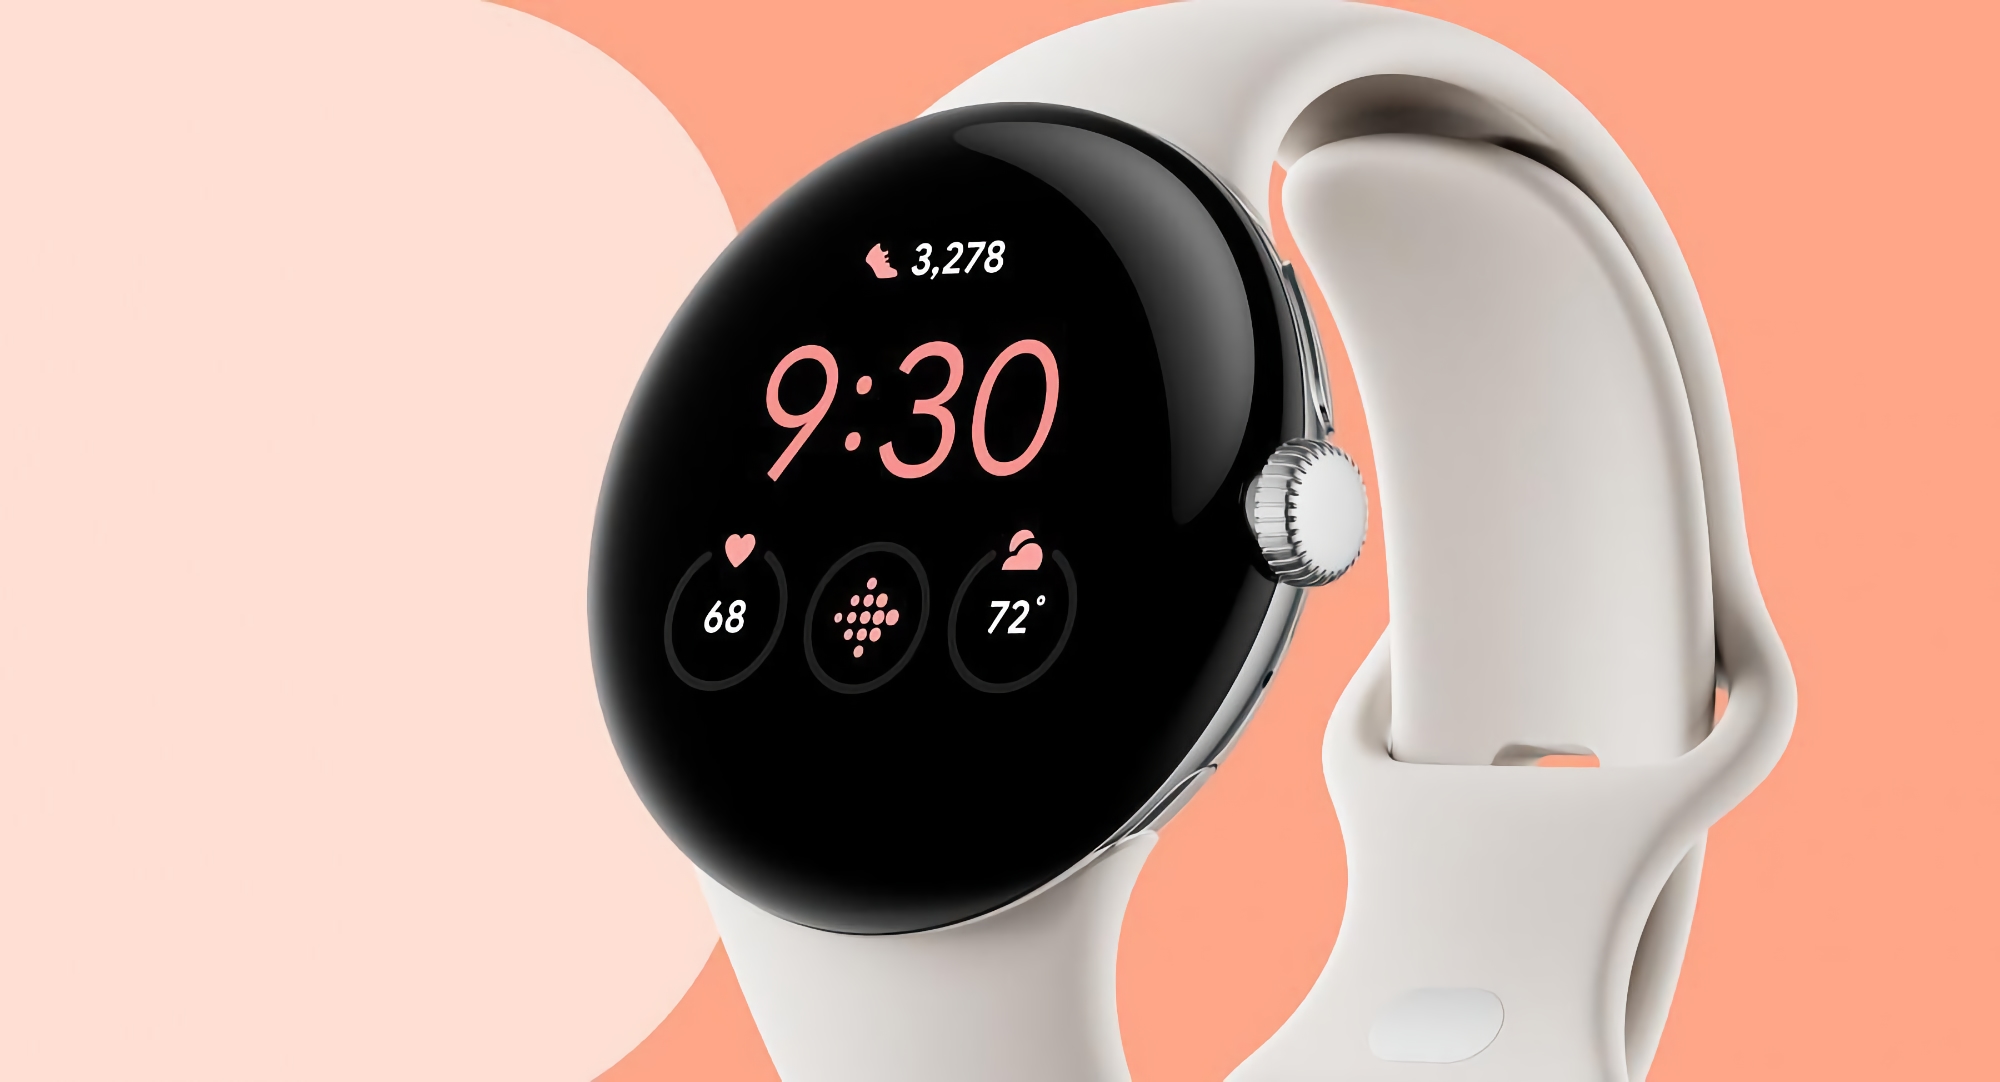 Écran rond, un seul bouton de commande et des supports spéciaux pour les bracelets : Google présente sa smartwatch Pixel Watch.